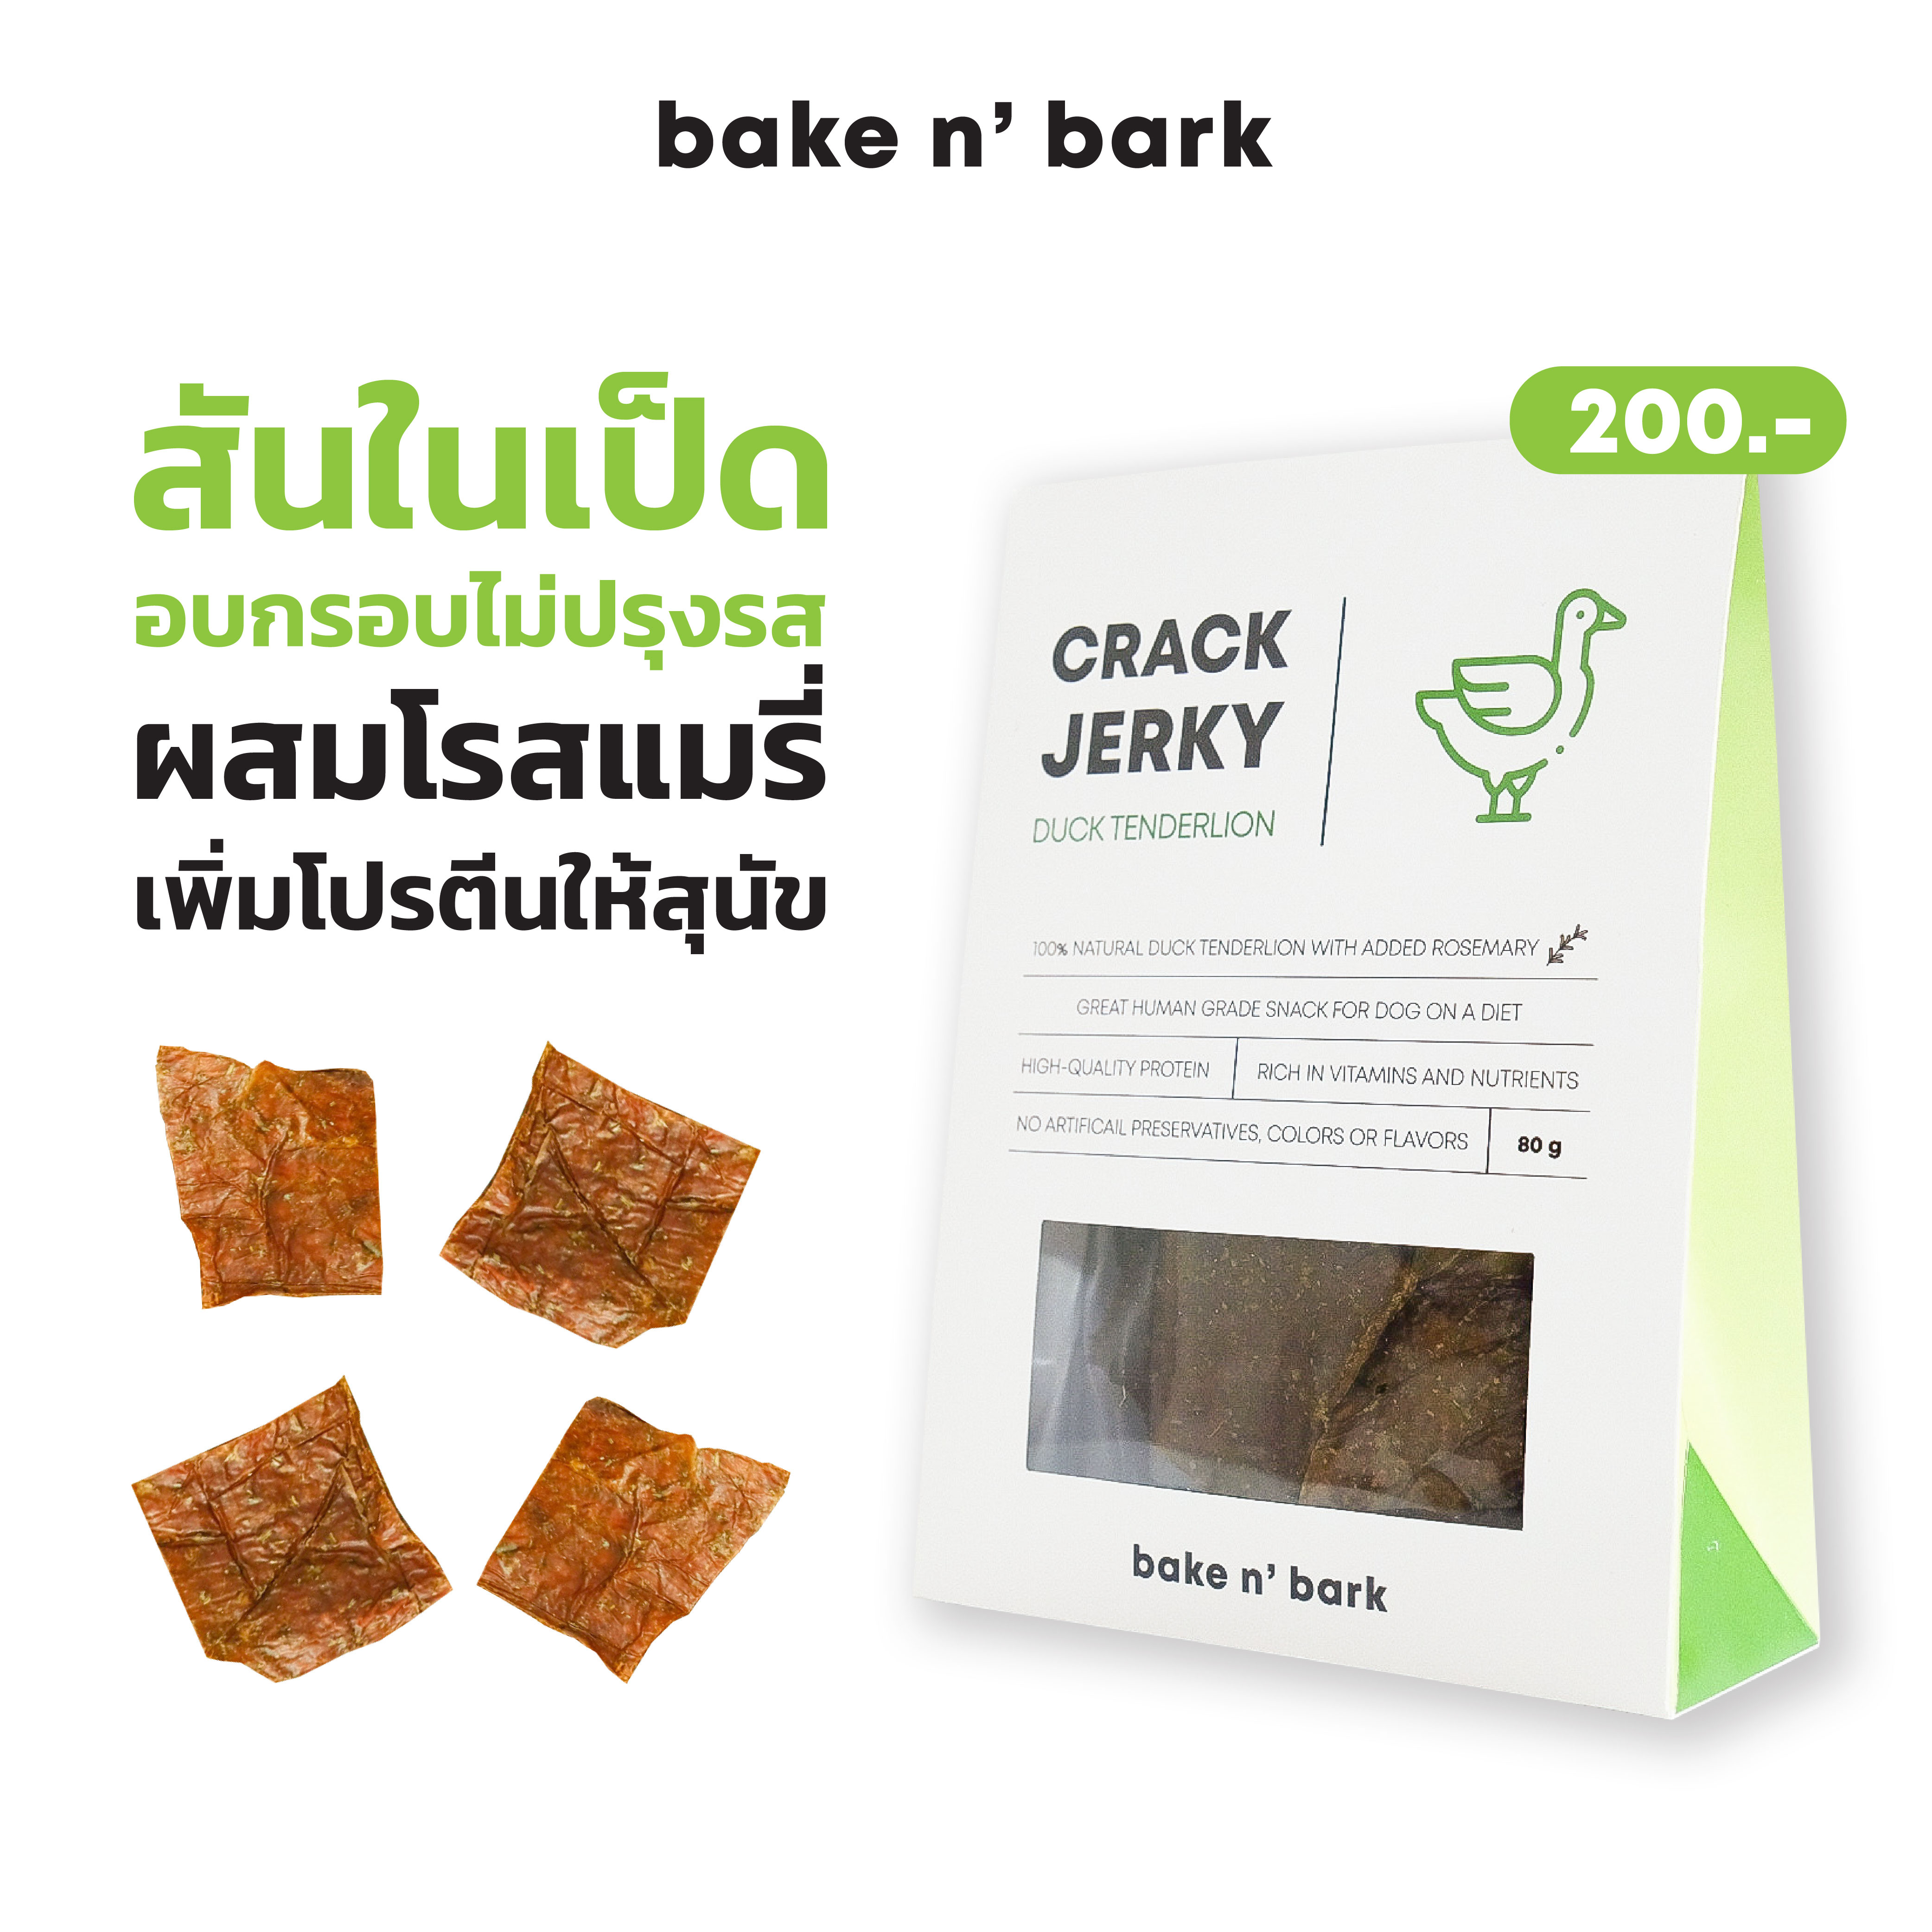 bakenbark | Crack Jerky Duck Tenderloin ขนมสุนัข สันในเป็ดอบกรอบไม่ปรุงรส ผสมโรสแมรี่ เพิ่มโปรตีนให้น้องหมา 200 บาท